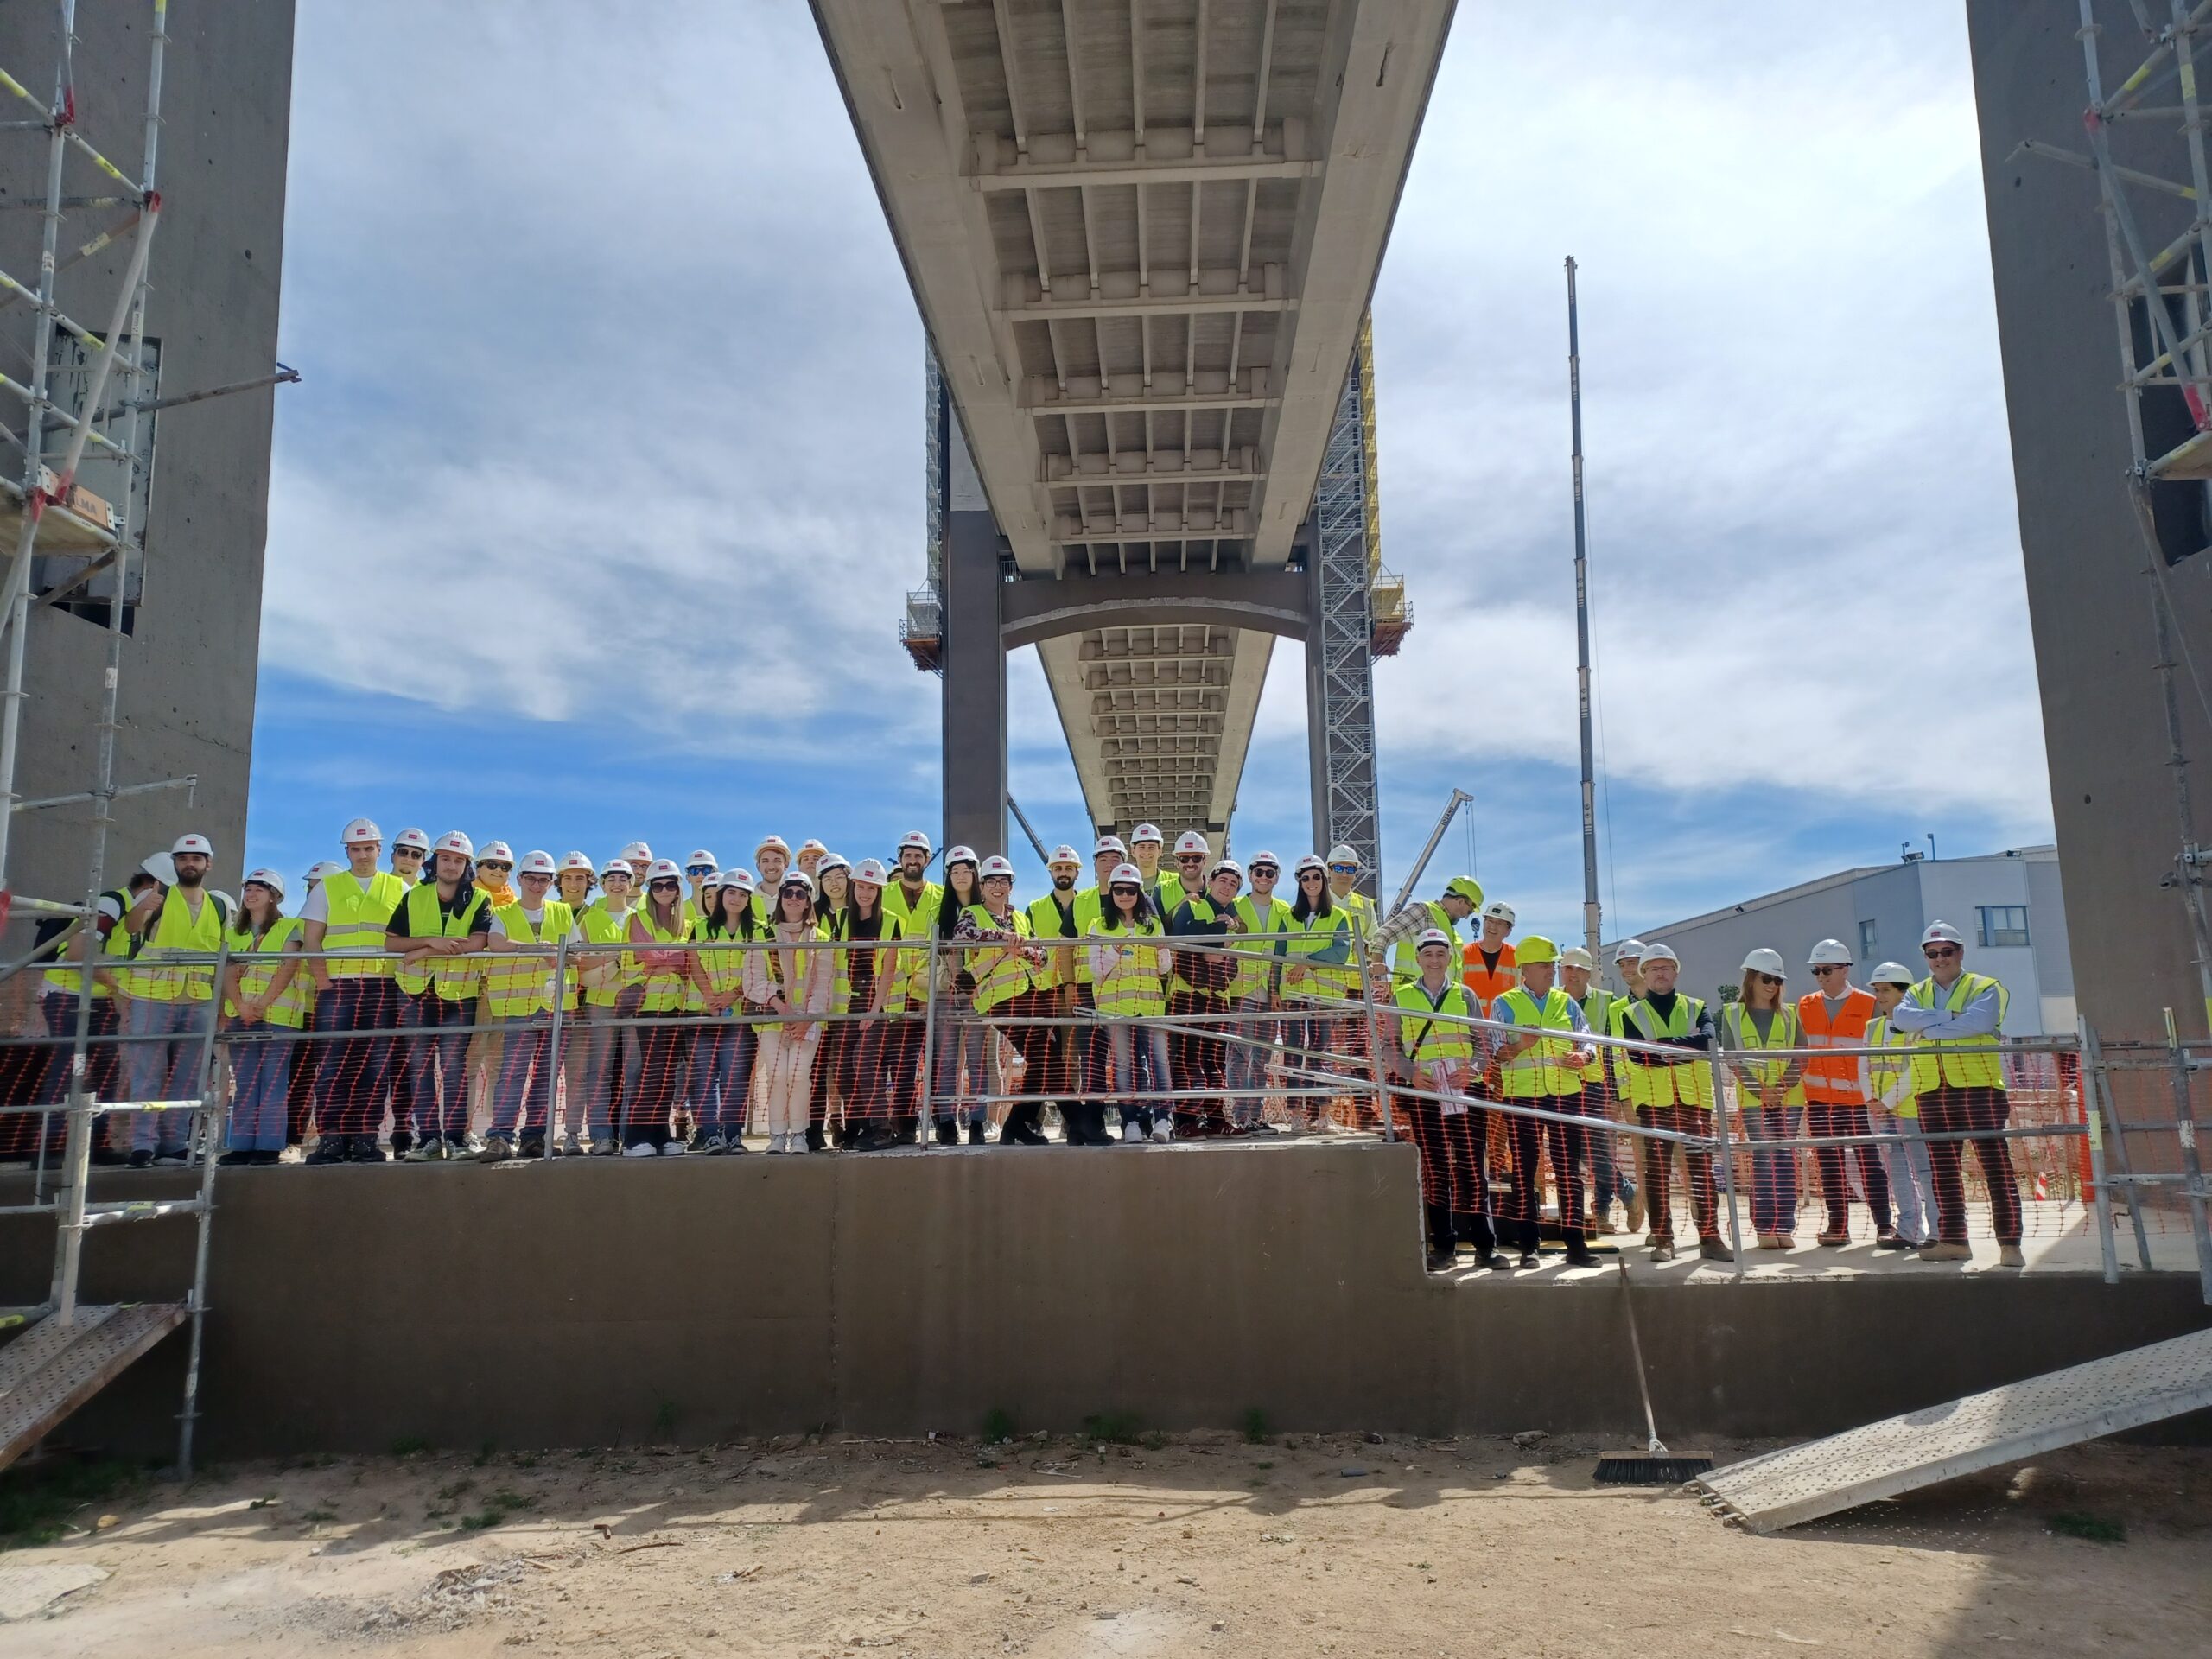 Estudiantes de Ingeniería visitan la renovación en curso del emblemático Puente del Centenario en Sevilla